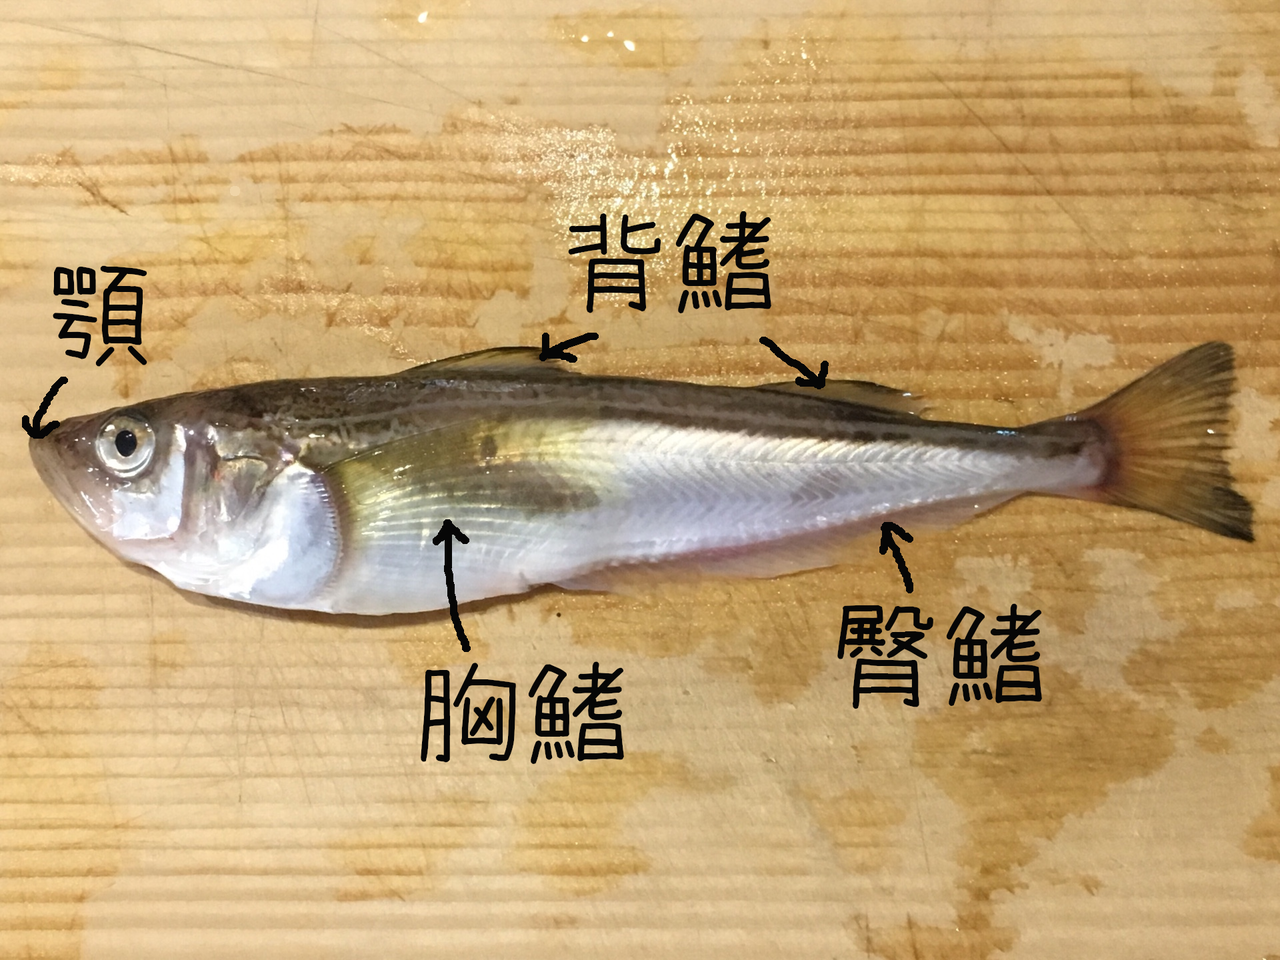 秋田の県魚 ハタハタを知る 基本情報編 あきたとさかな